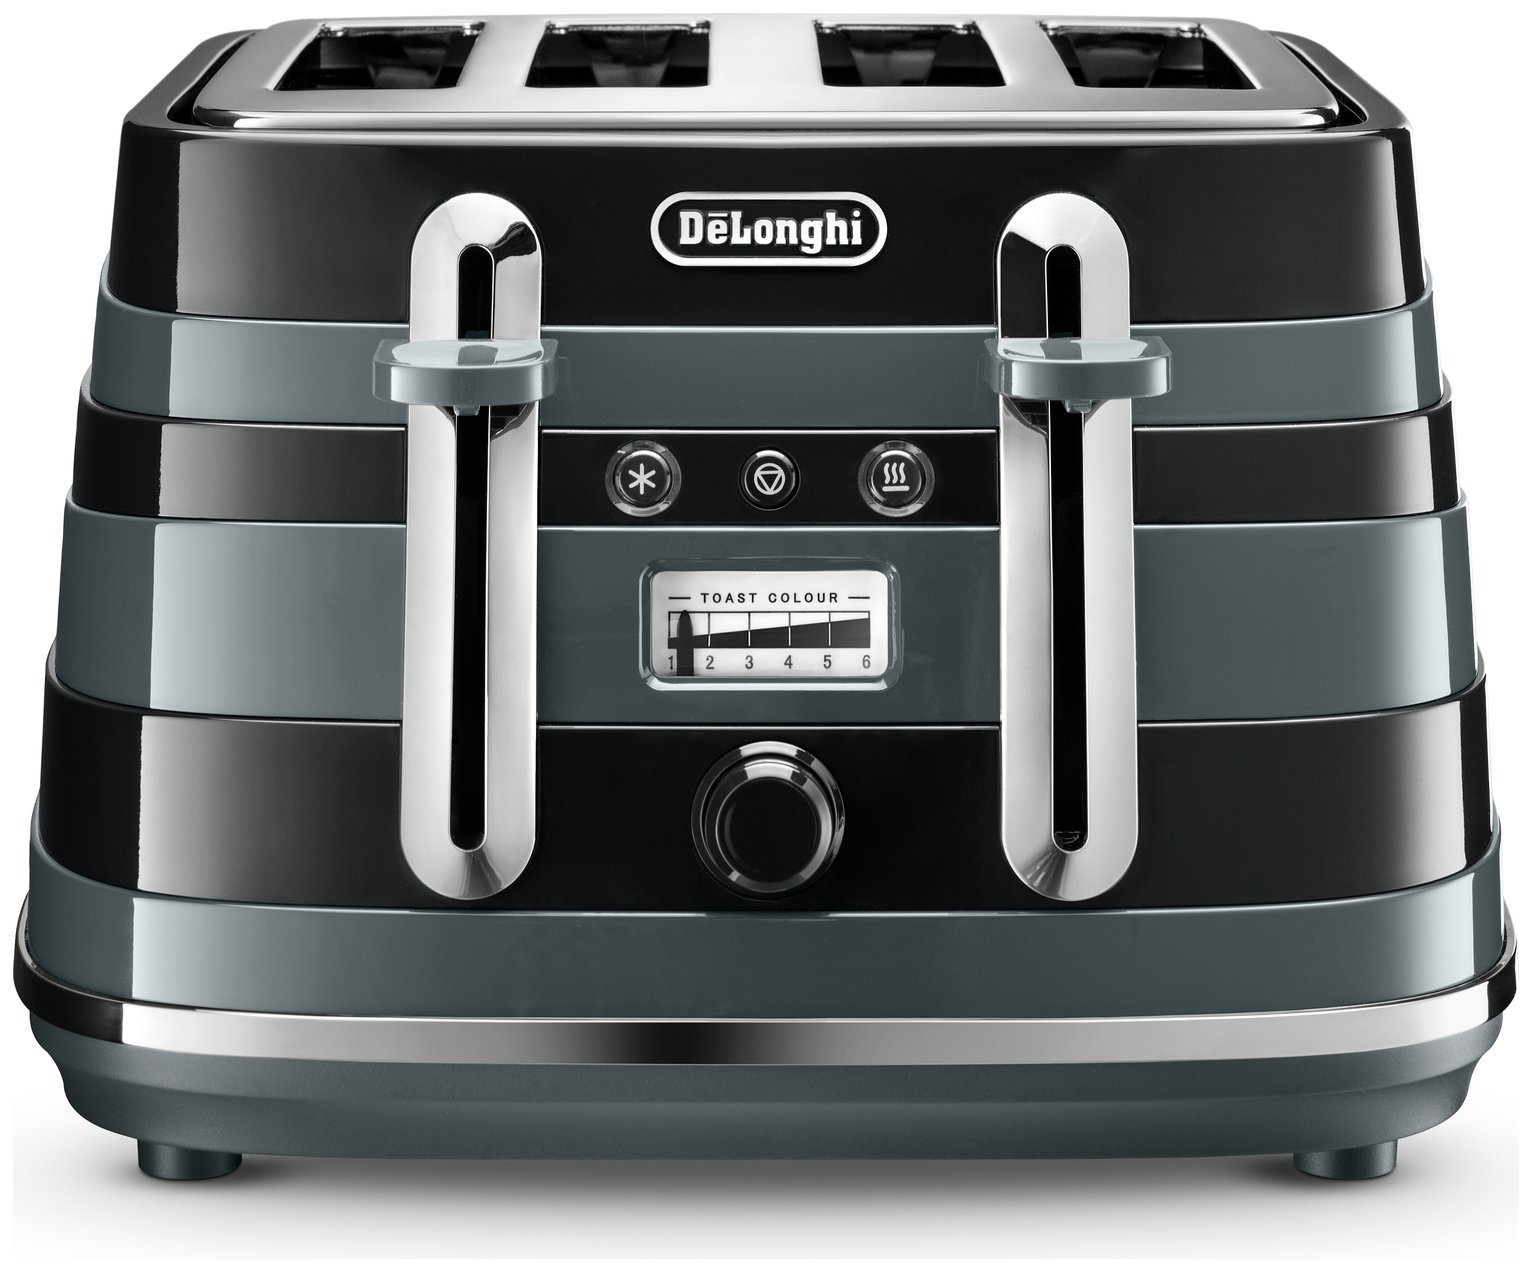 De'Longhi CTA4003B Avvolta 4 Slice Toaster - Black & Grey